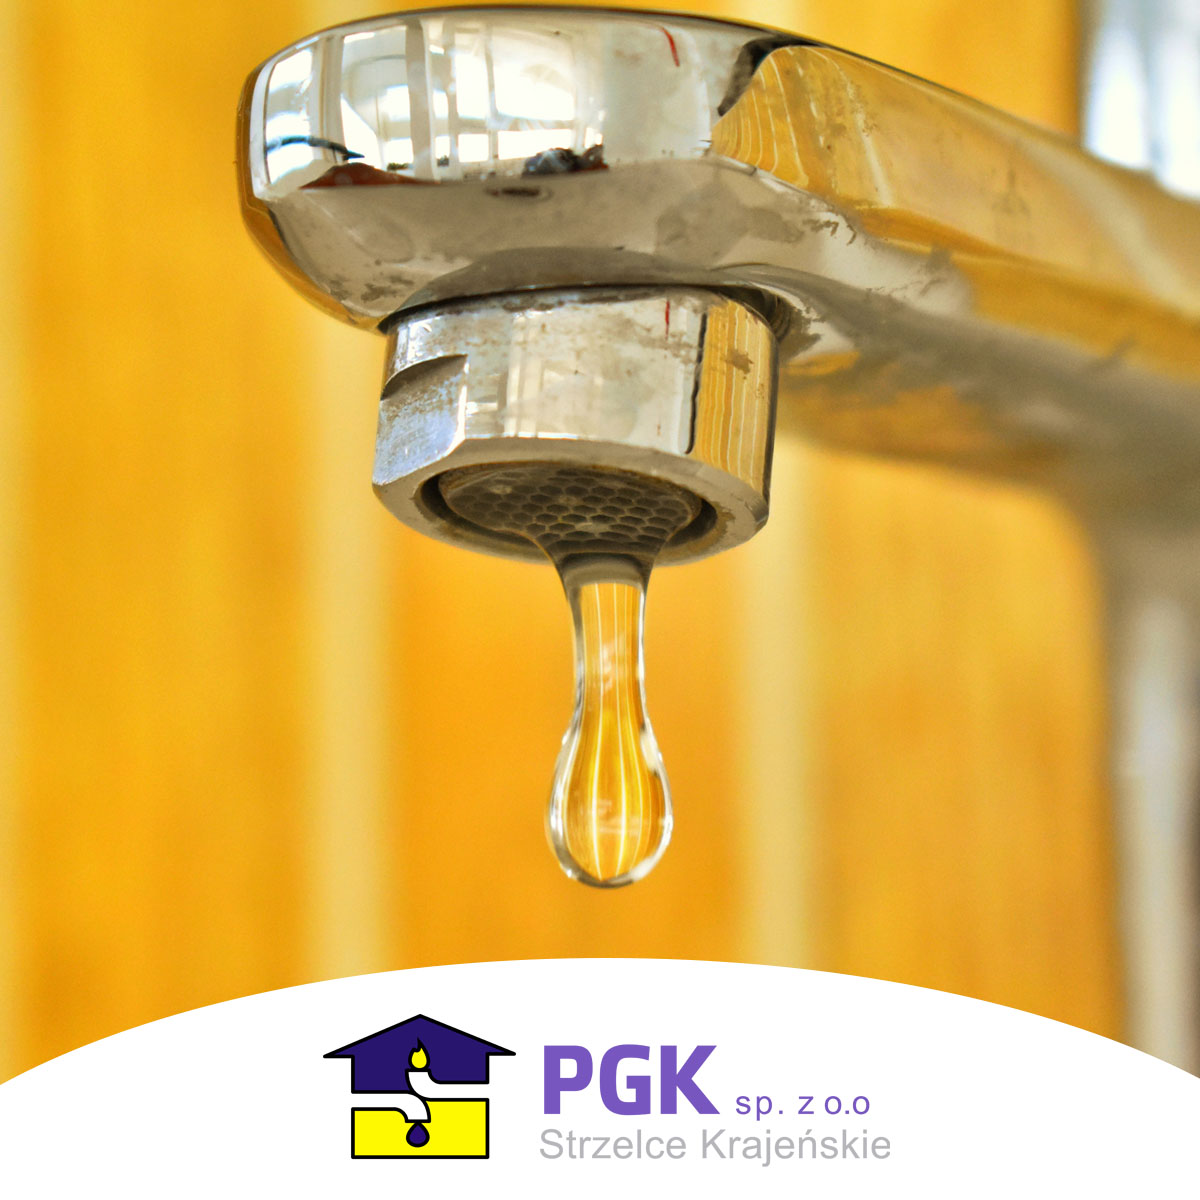 Na zdjęciu kran z cieknącą wodą i logo PGK